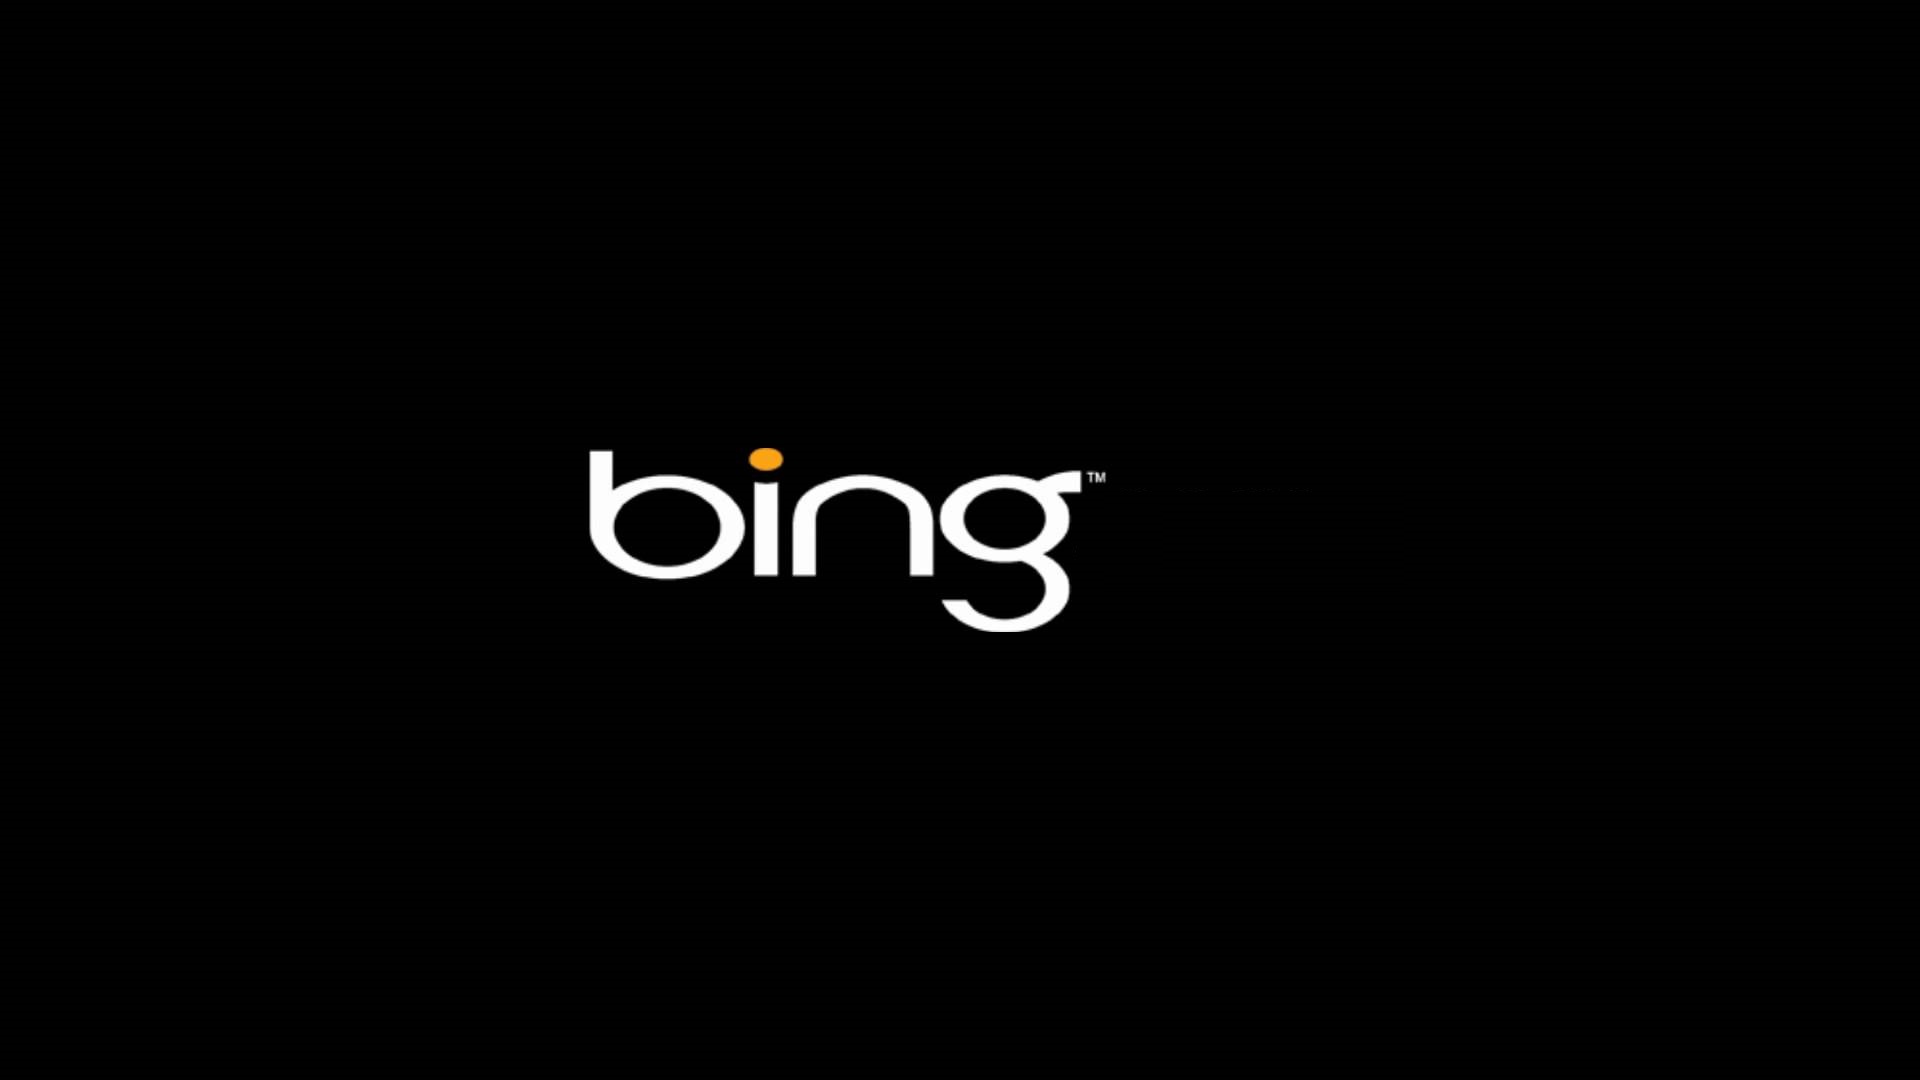 Bing Logo Wallpapers